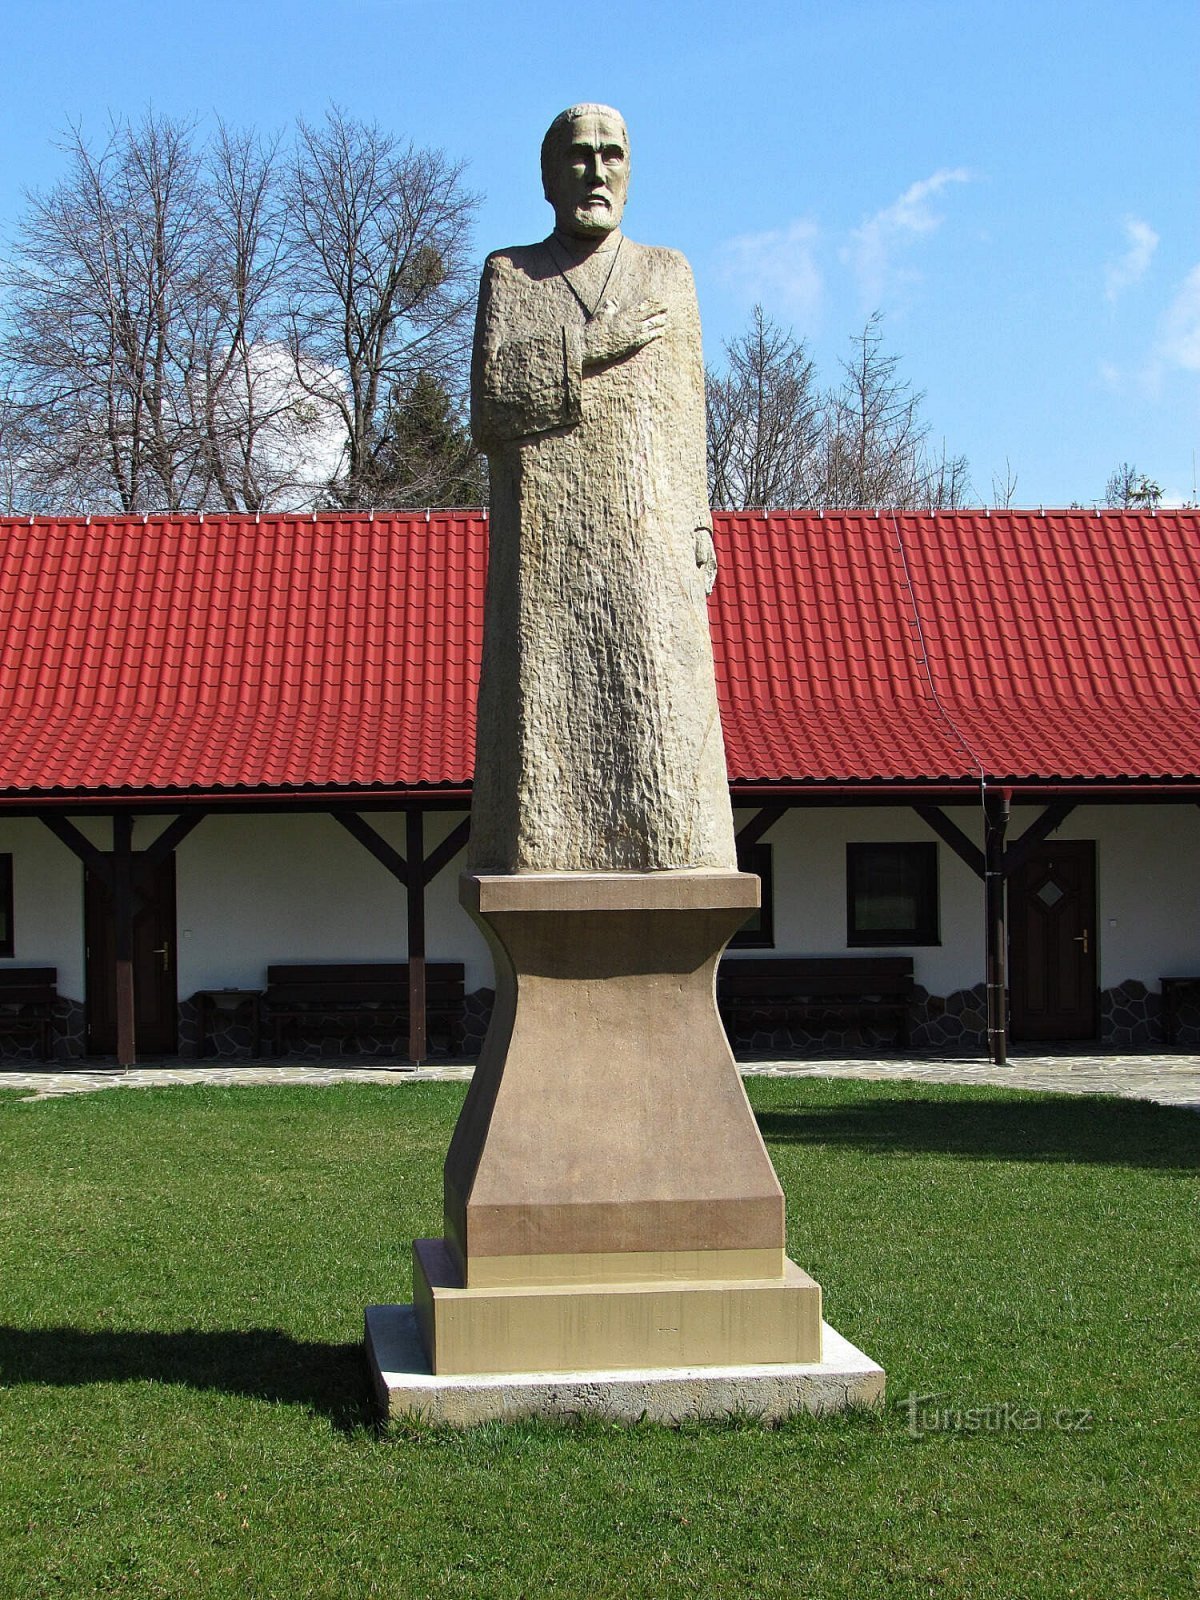 Prženské Paseky - une statue de Hus et un socle sans statue